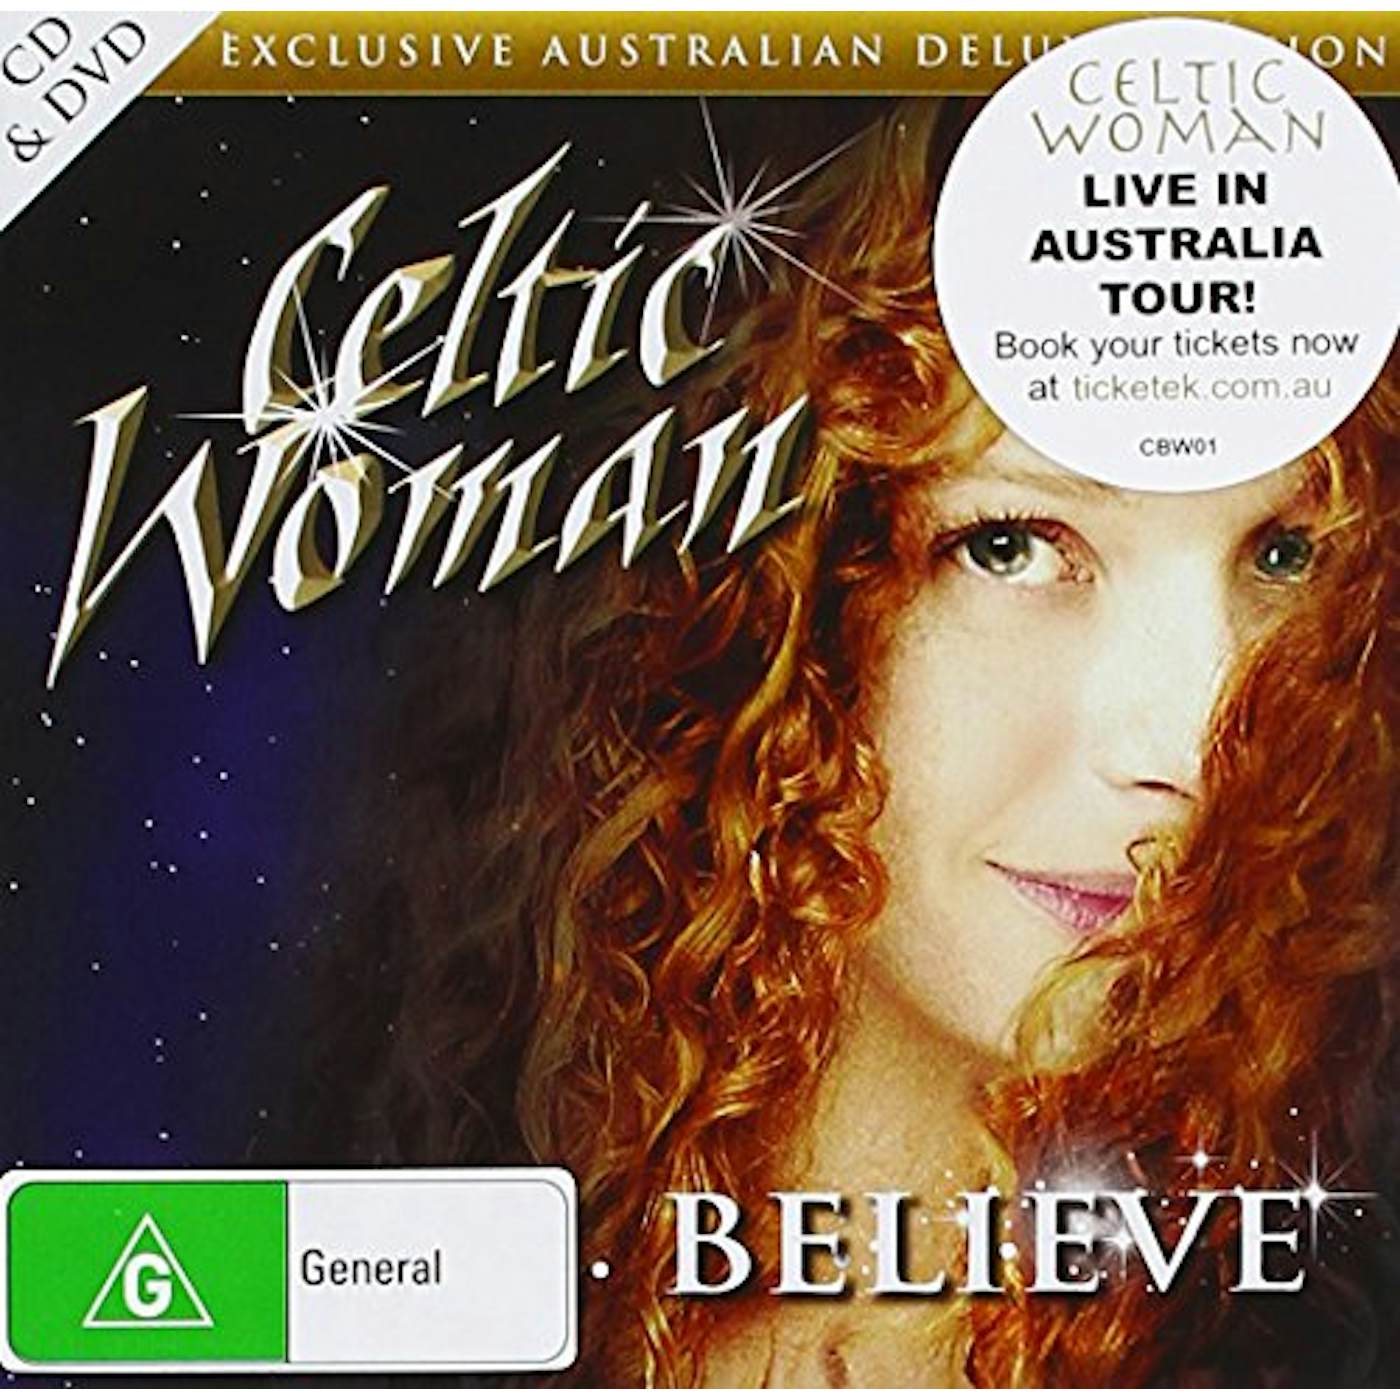 Celtic Woman BELIEVE (AUSTRALIAN DELUXE EDITION) CD